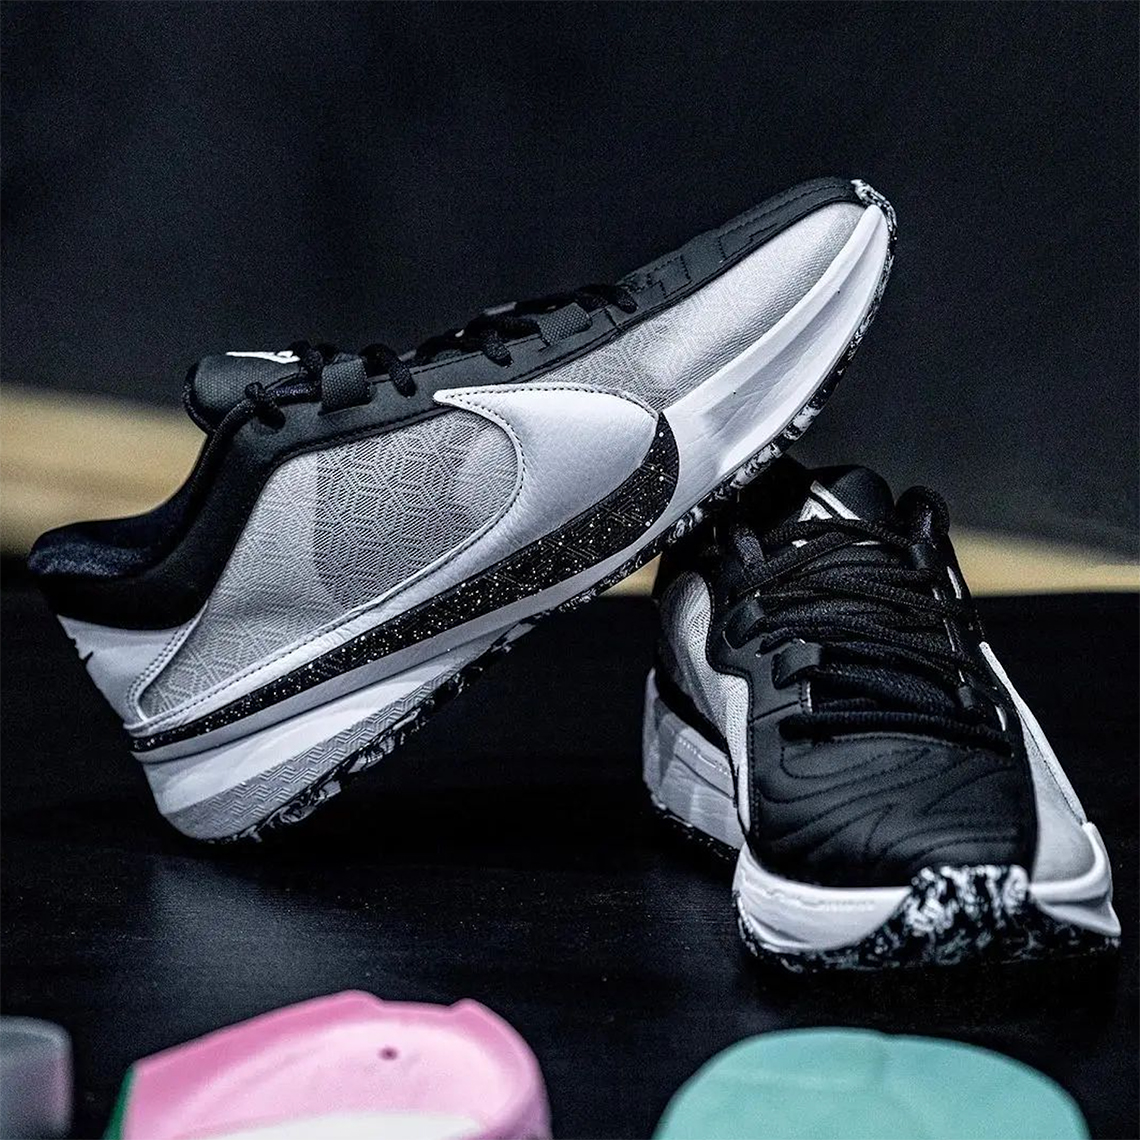 Nike hyperspike zoom freak 5 oreo release date 1